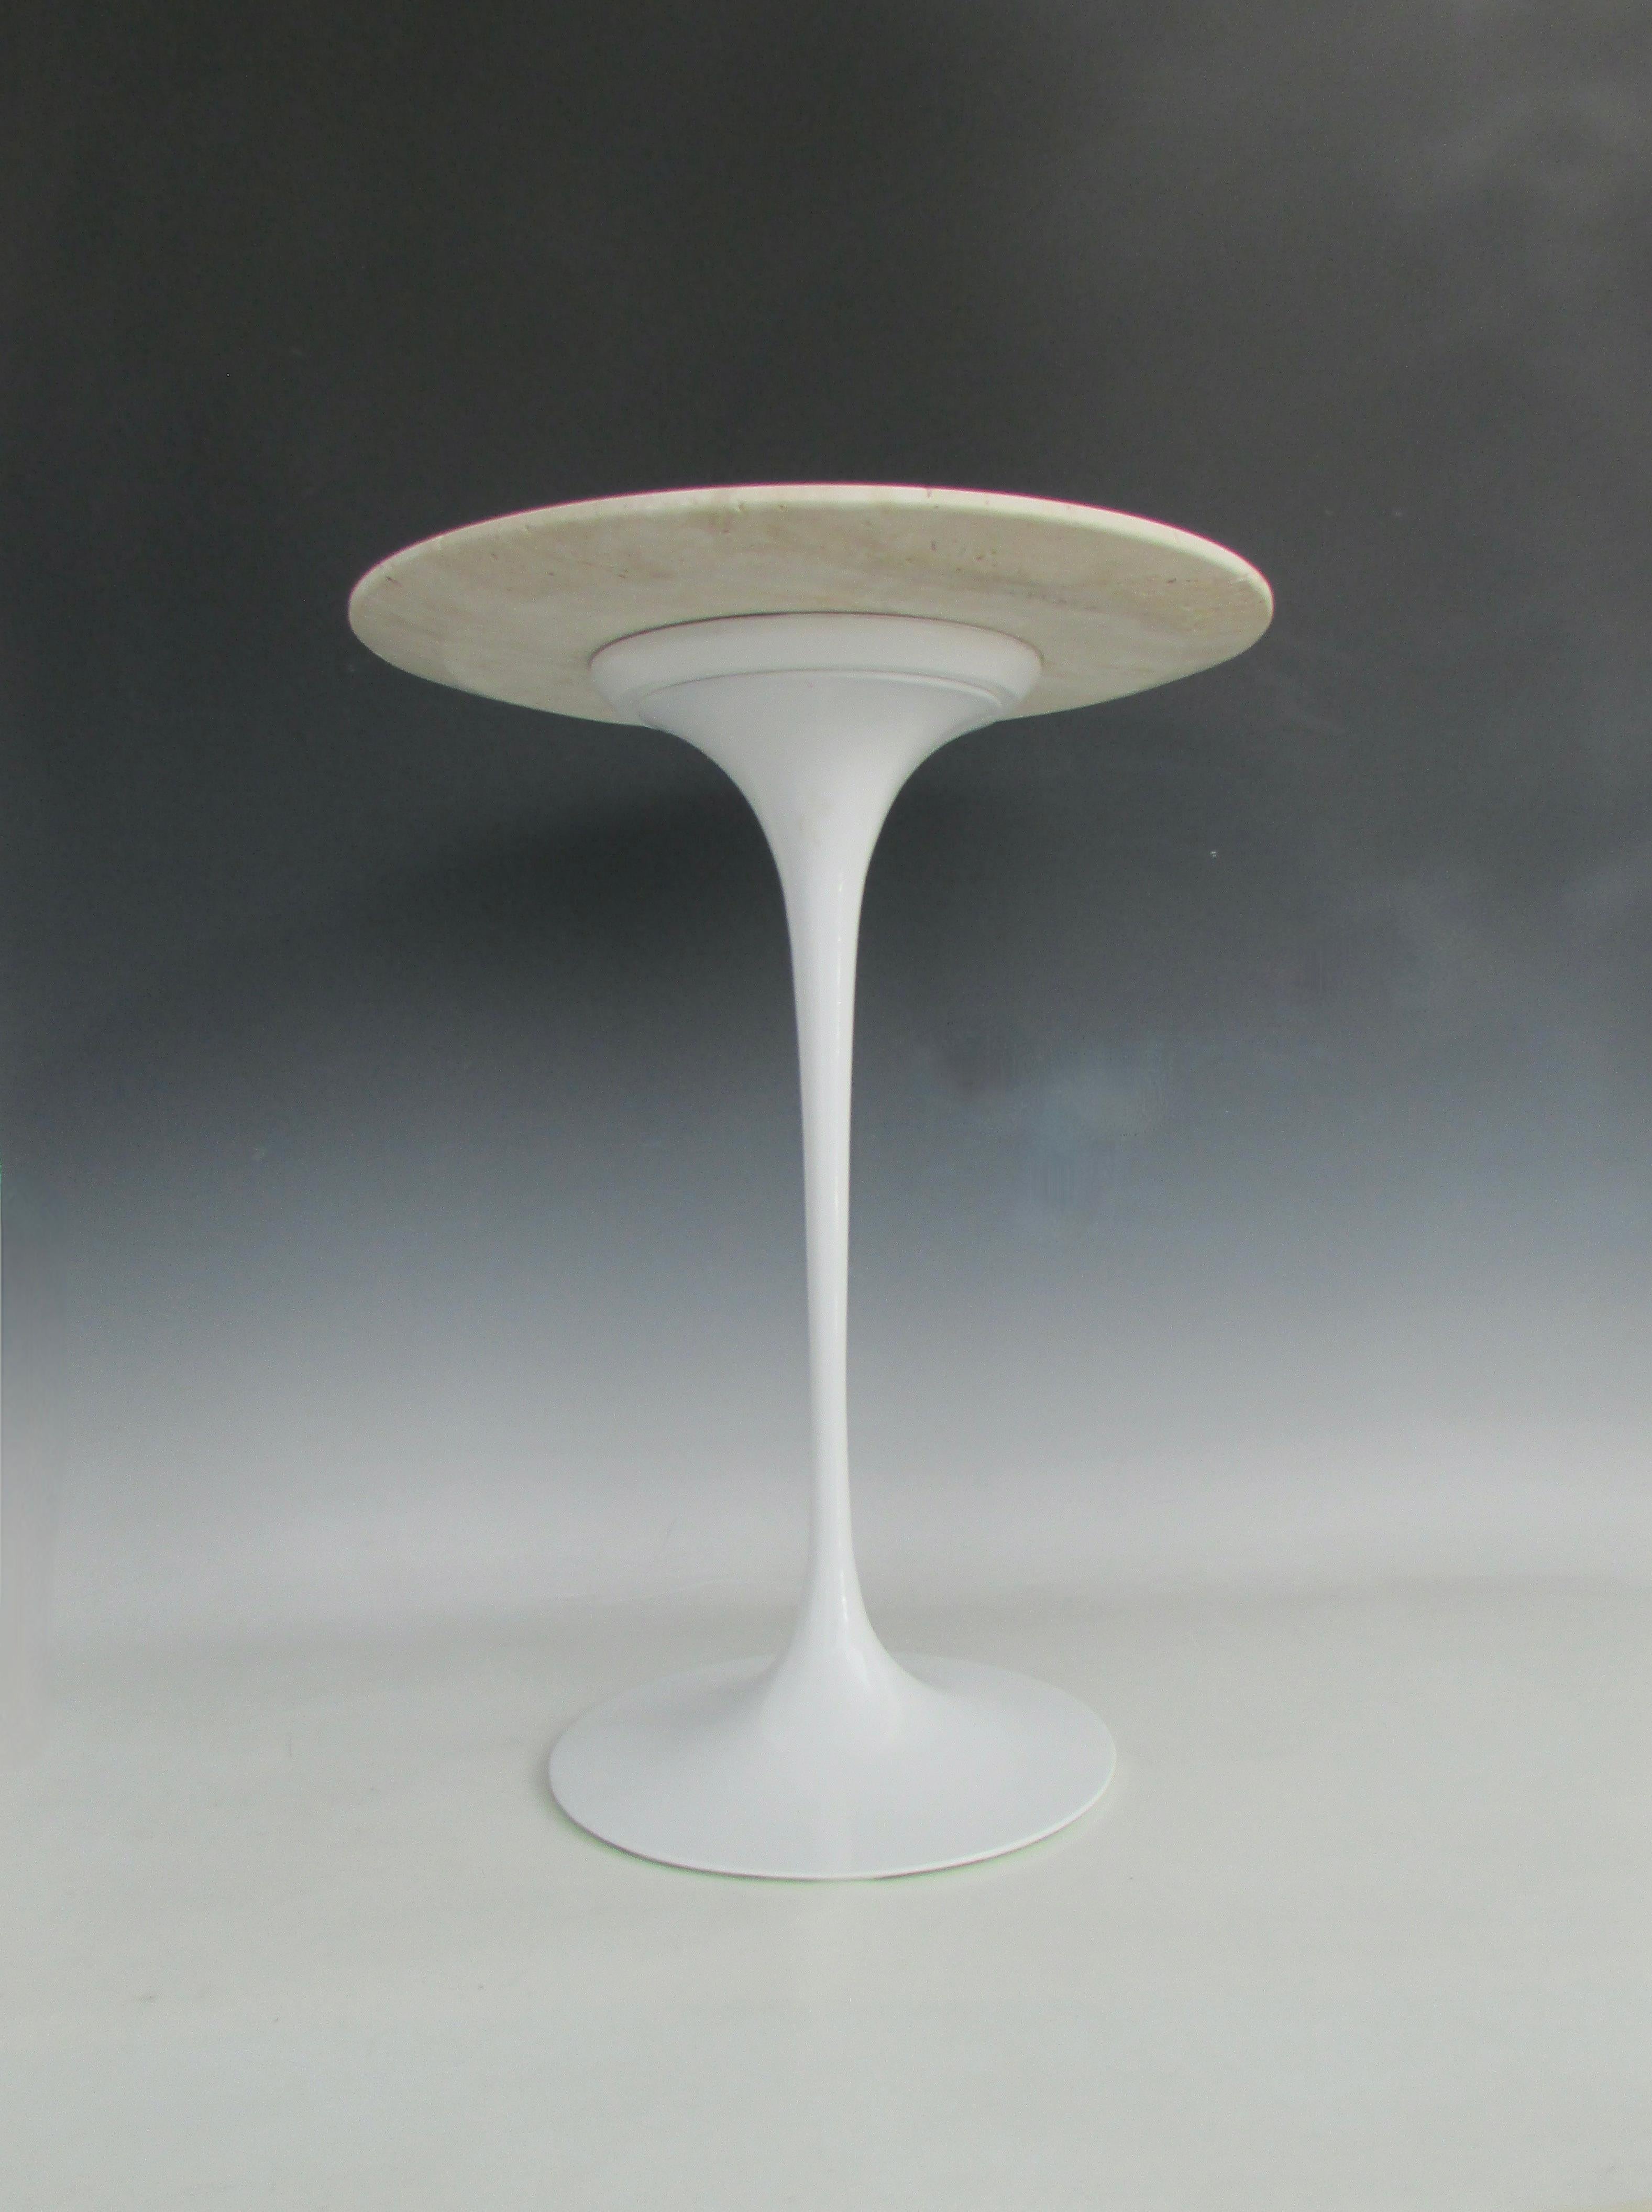 Tulip table Designed by Eero Saarinen for Knoll. Eero Saarinen vowed to address the 